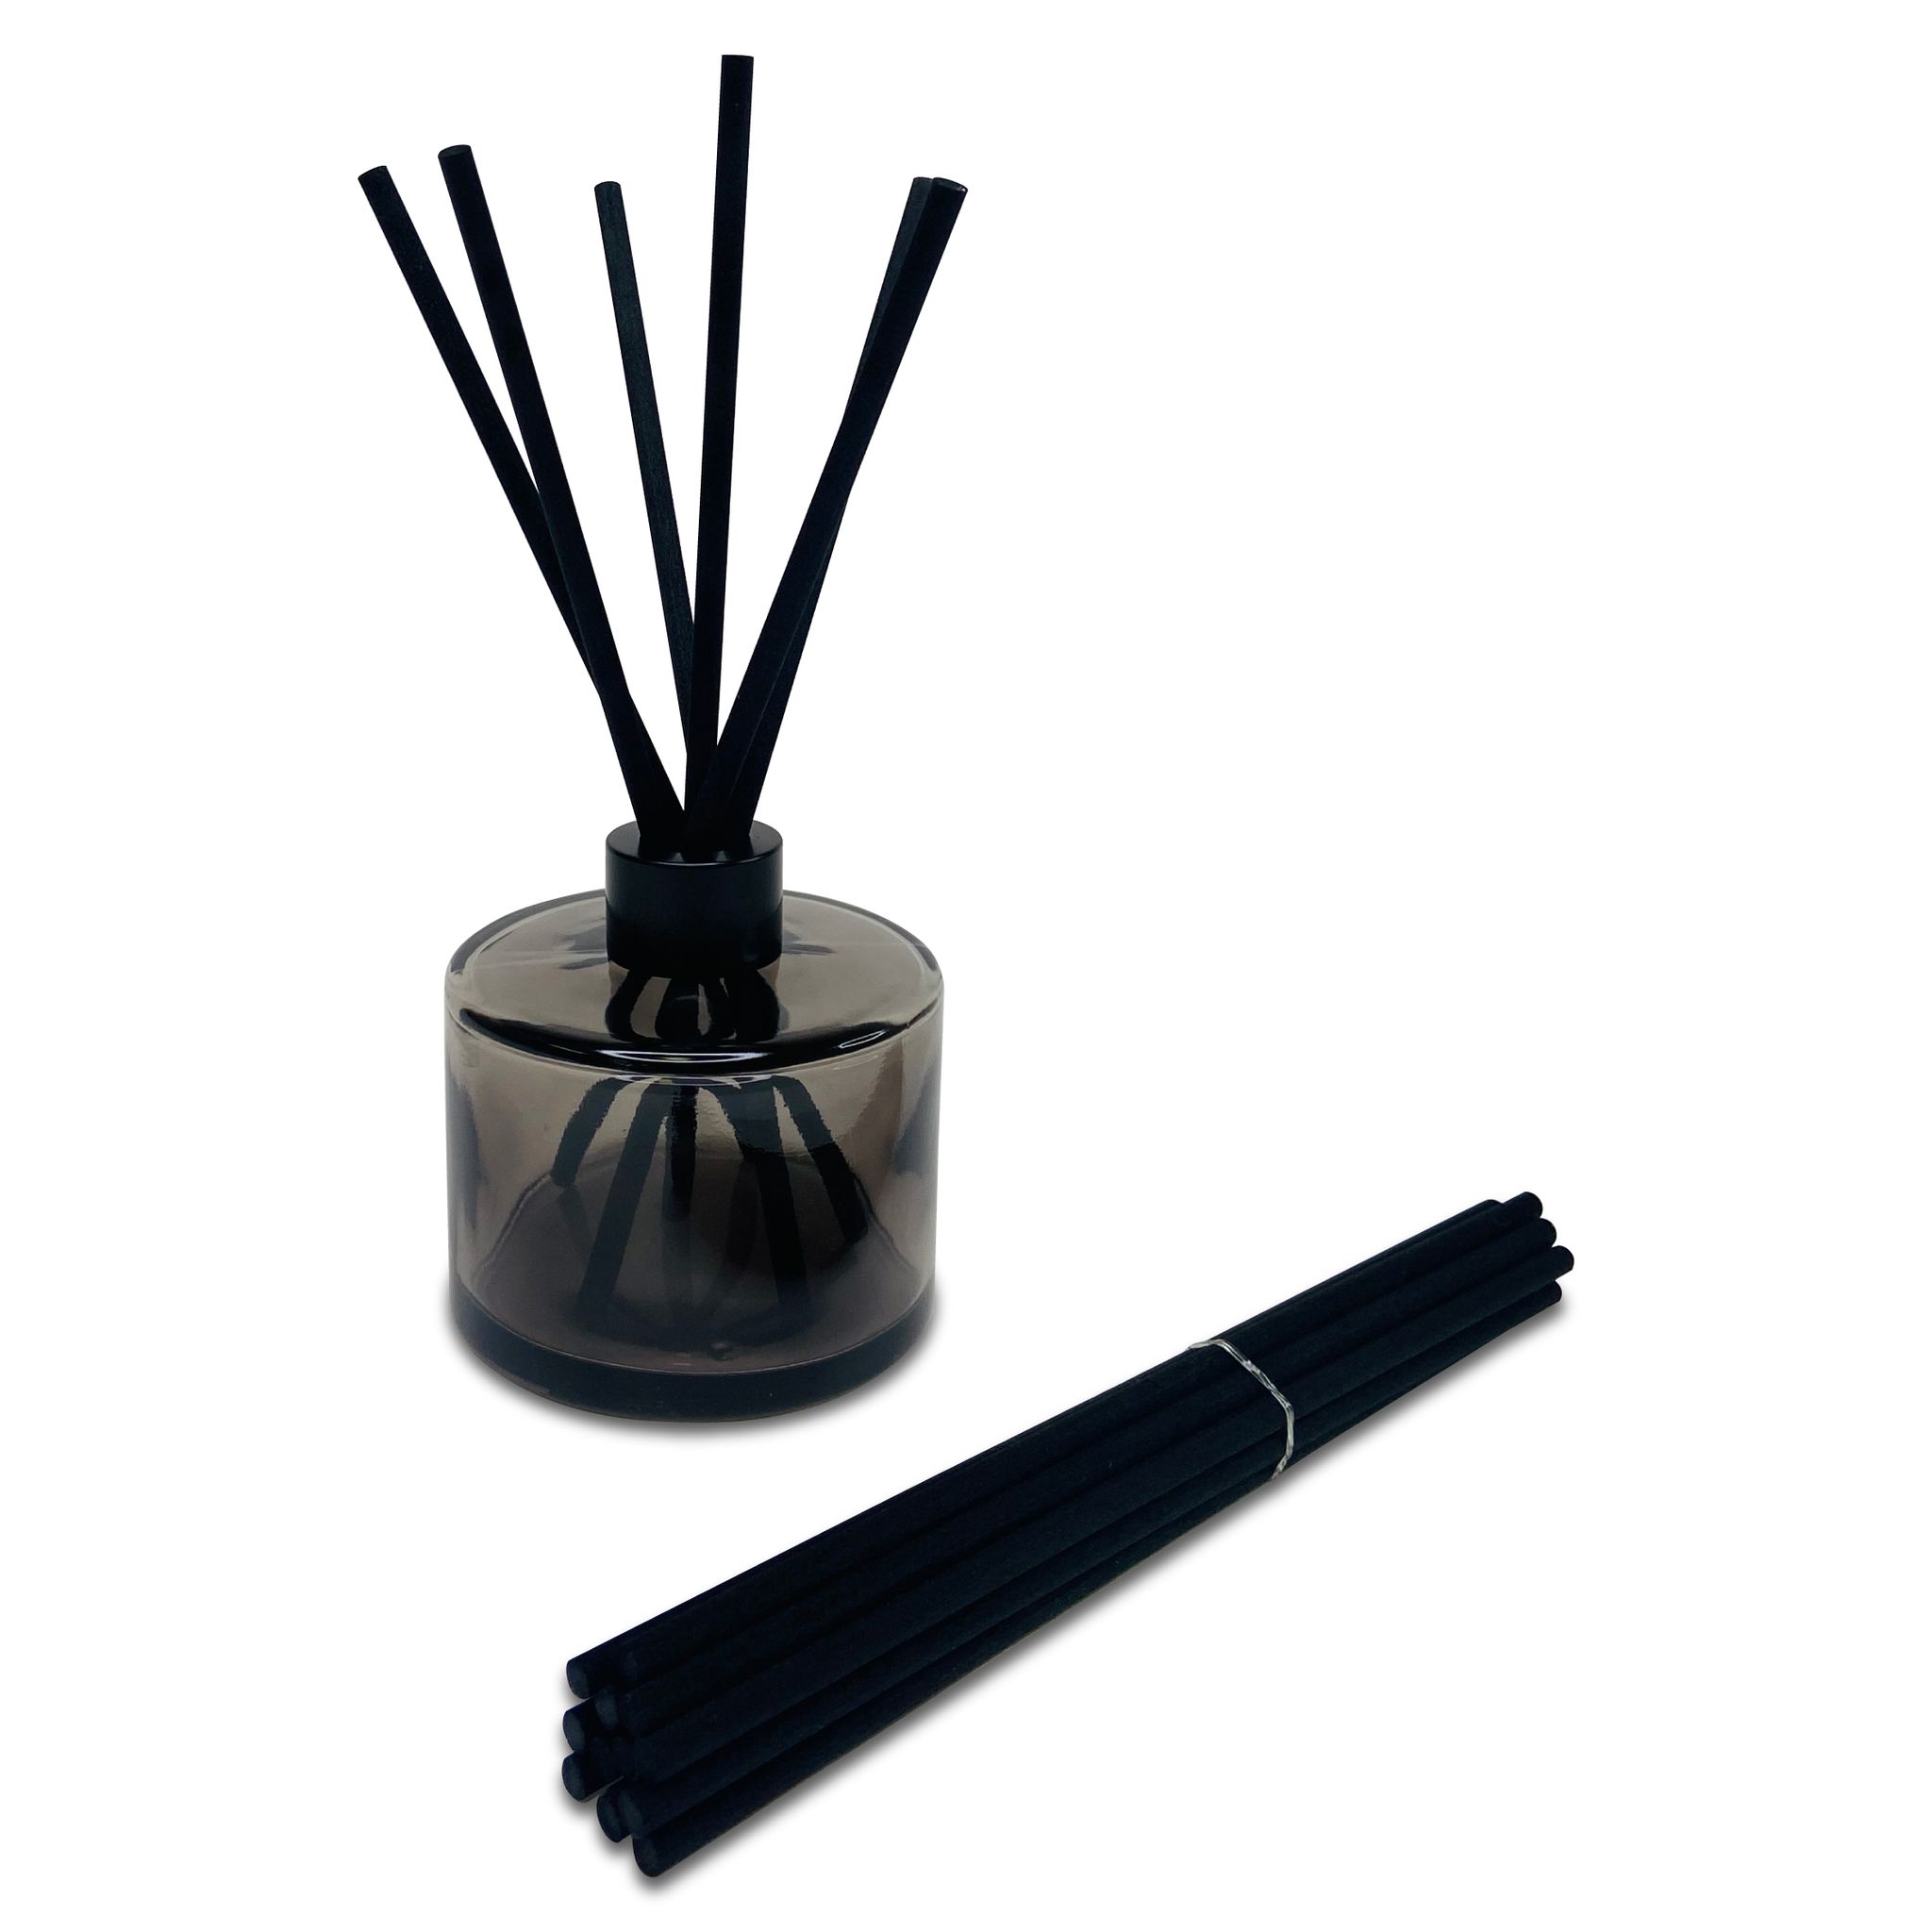 Black 5mm x 200mm reed diffuser sticks